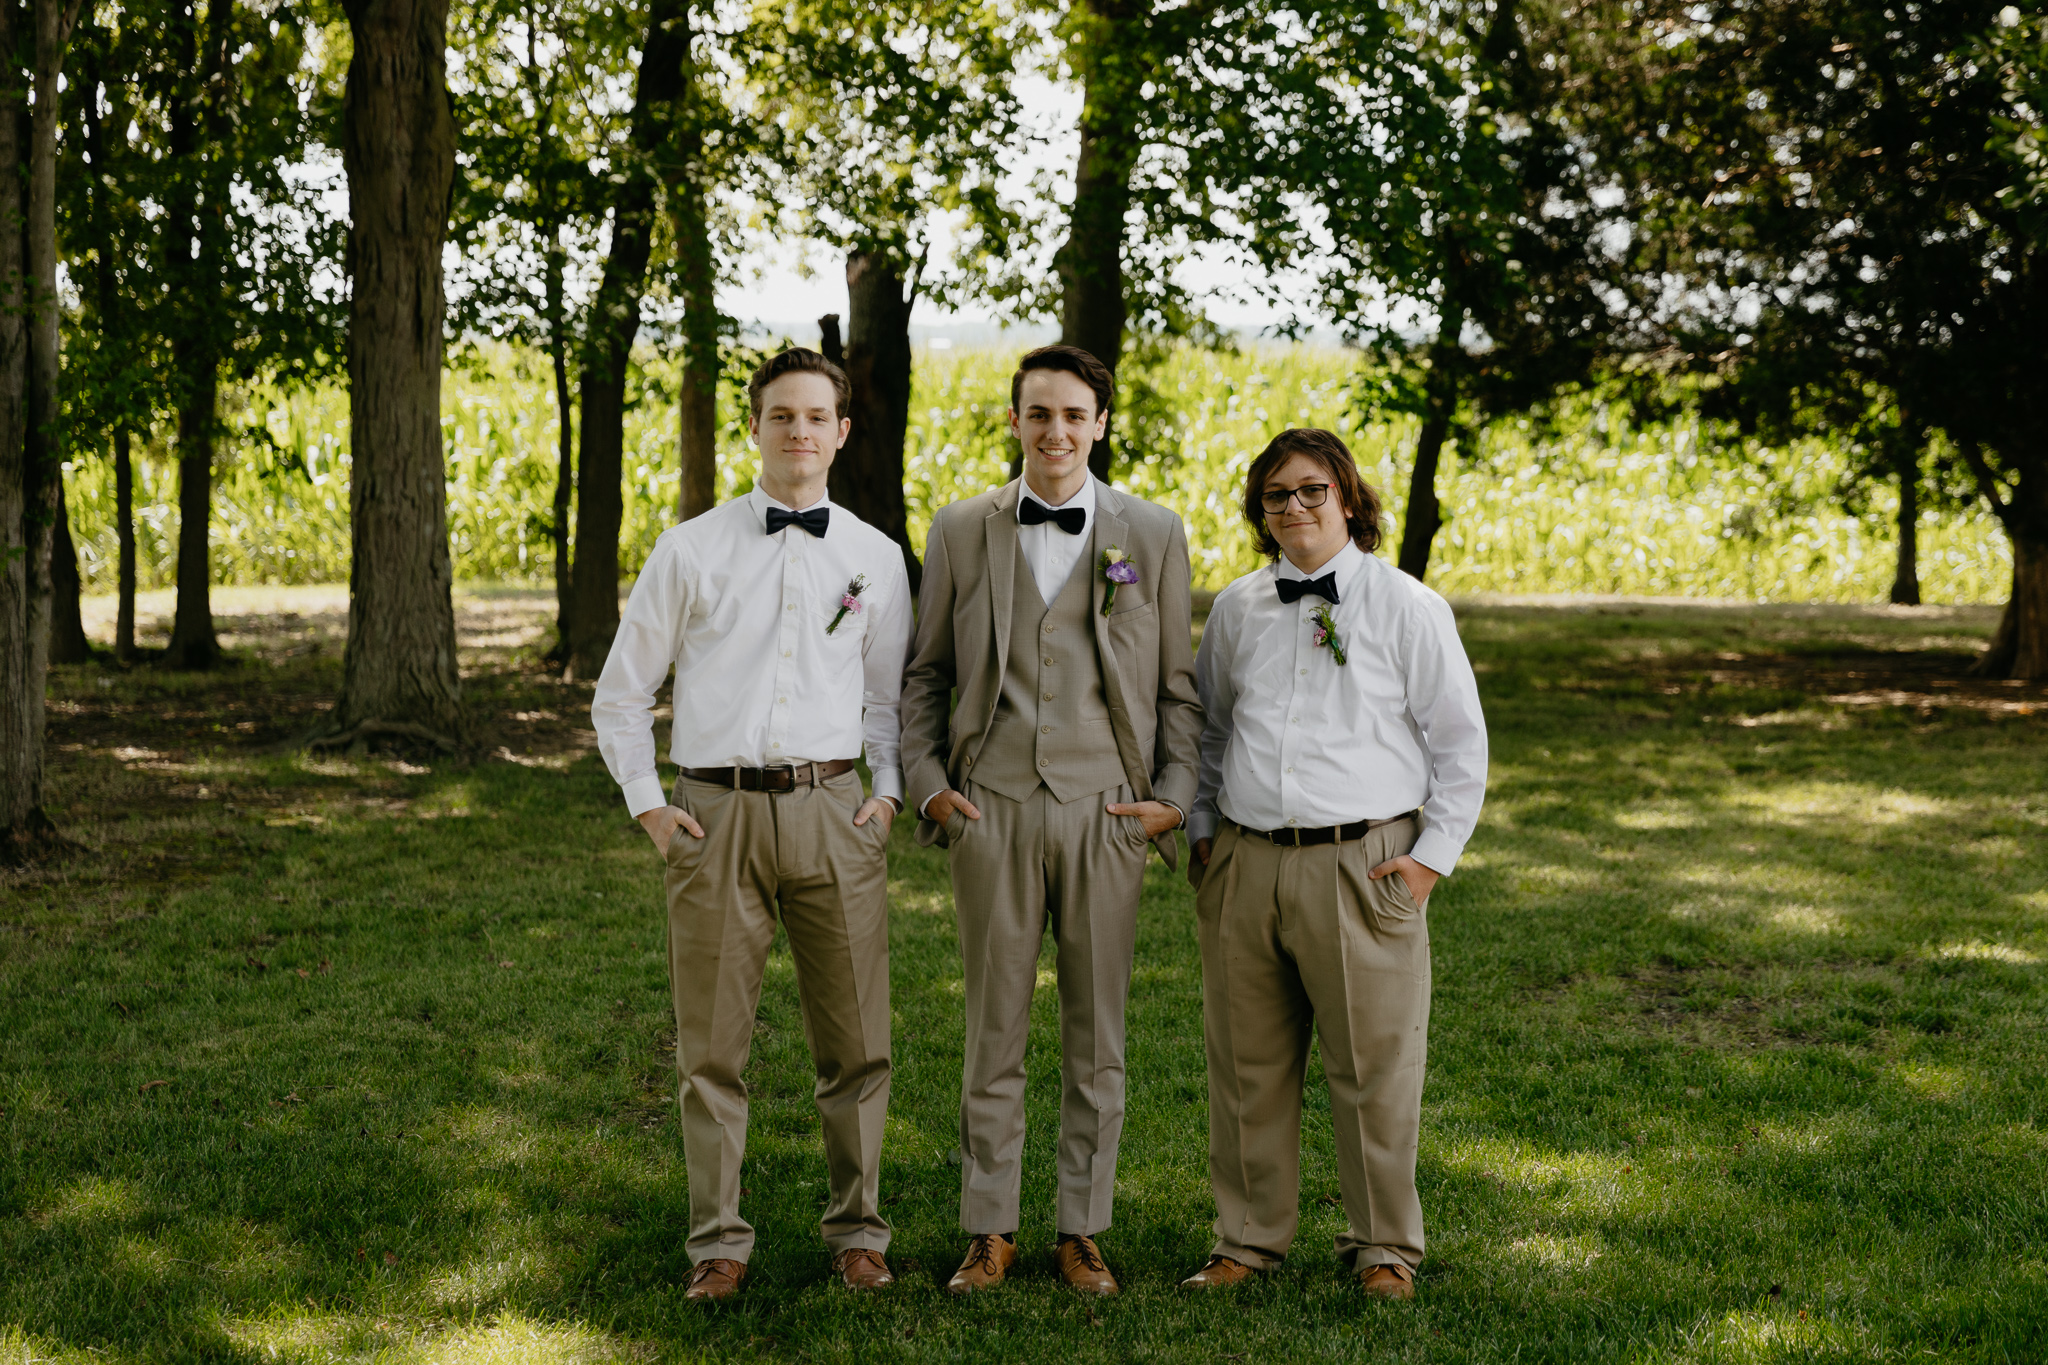 Outdoor Indiana Wedding in Summer // Groomsmen Portraits